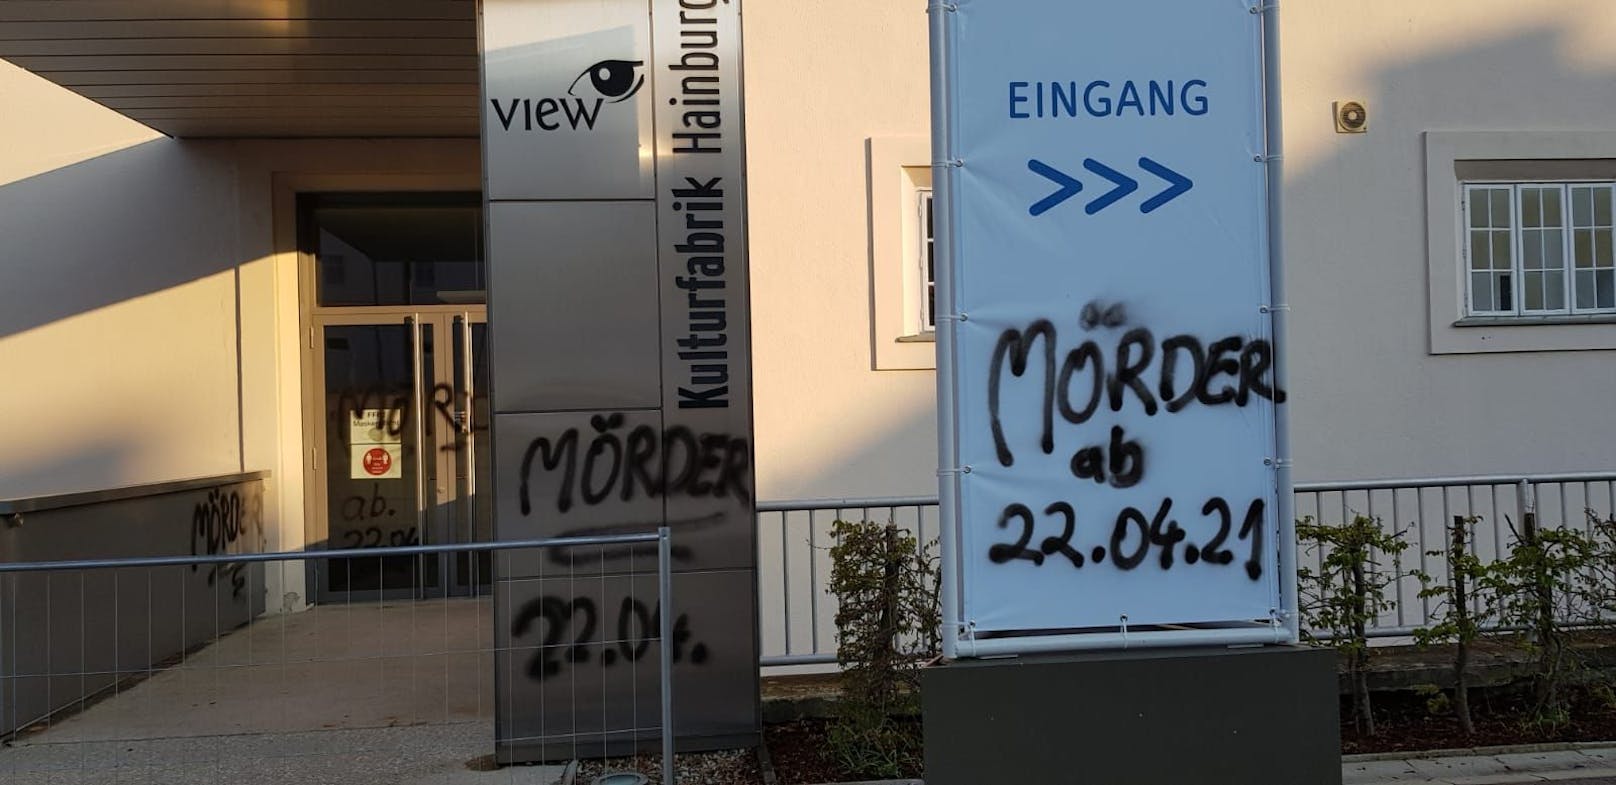 Unbekannte beschmierten die Impfstraße mit dem Schriftzug "Mörder".